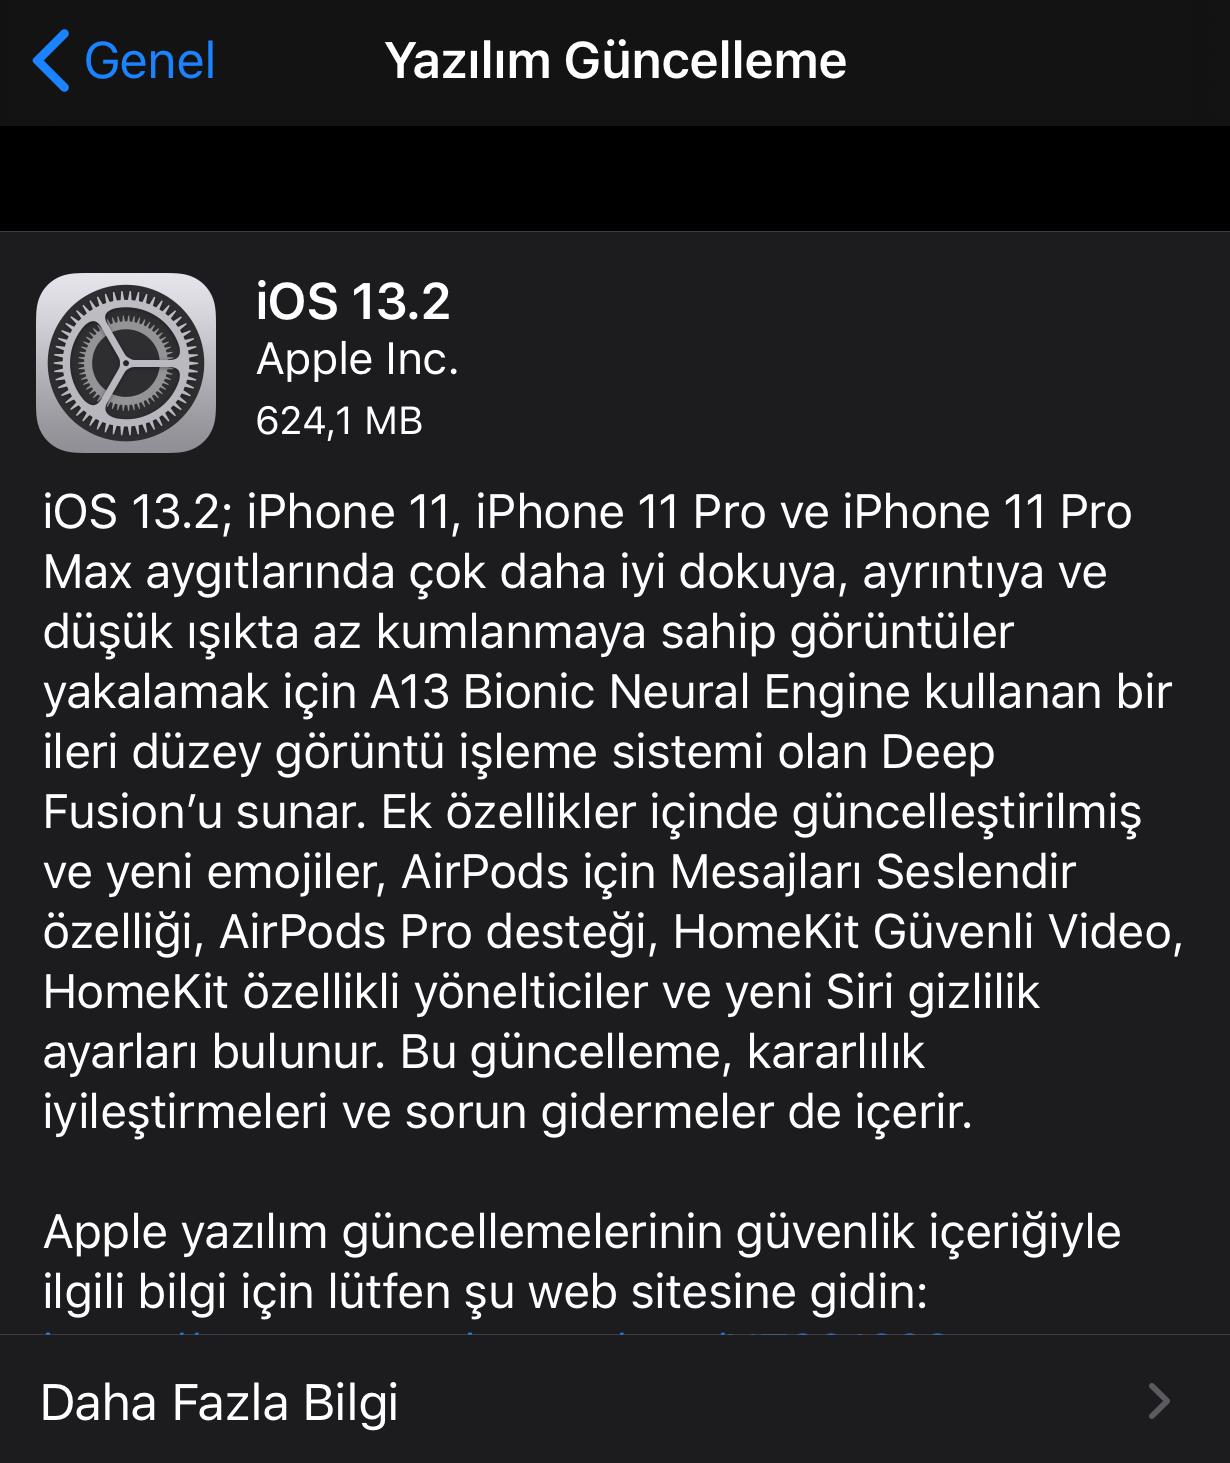 iOS 13.2 çıktı! iOS 13.2 ile gelen yeni özellikler